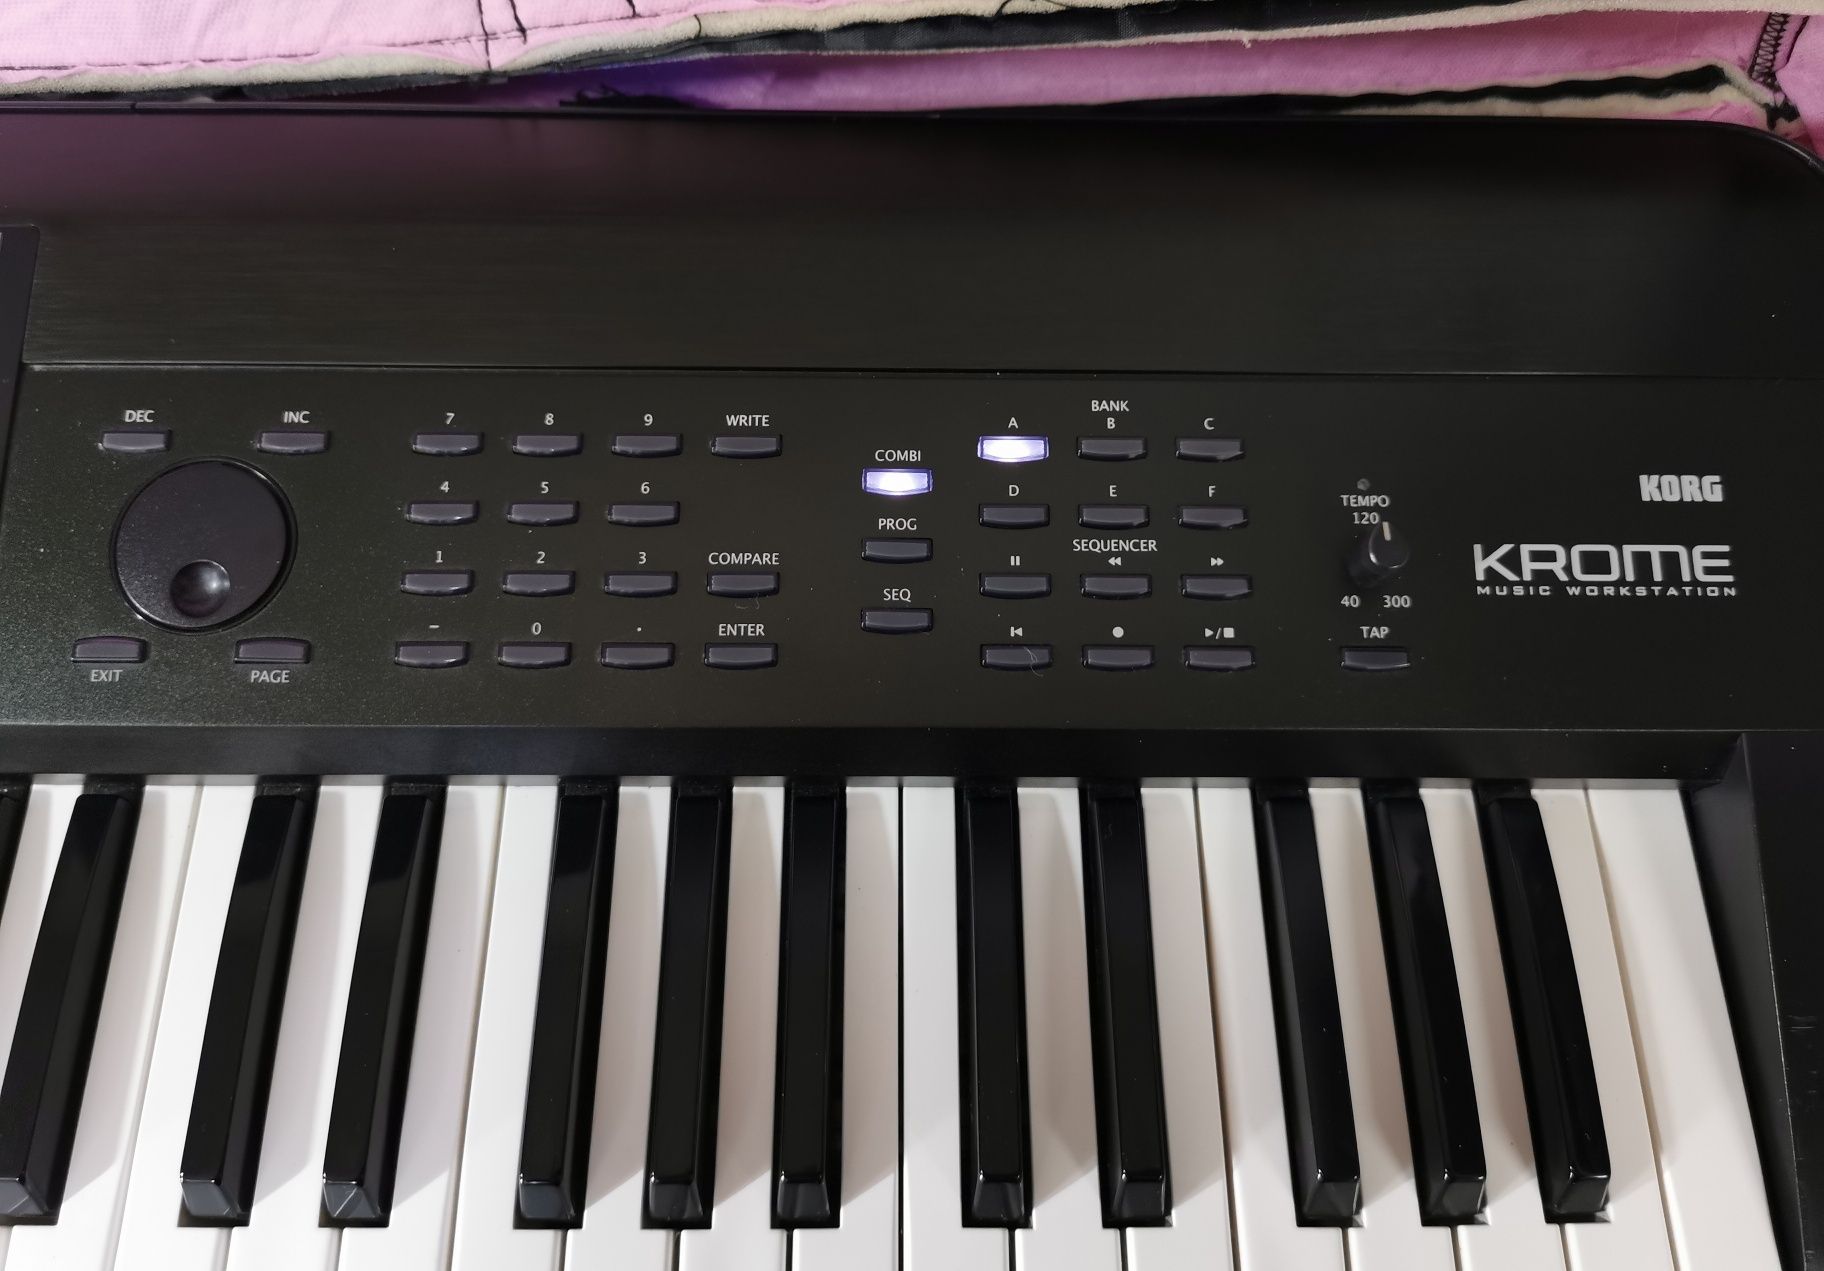 Клавир  пиано синтезатор KORG KROME 61